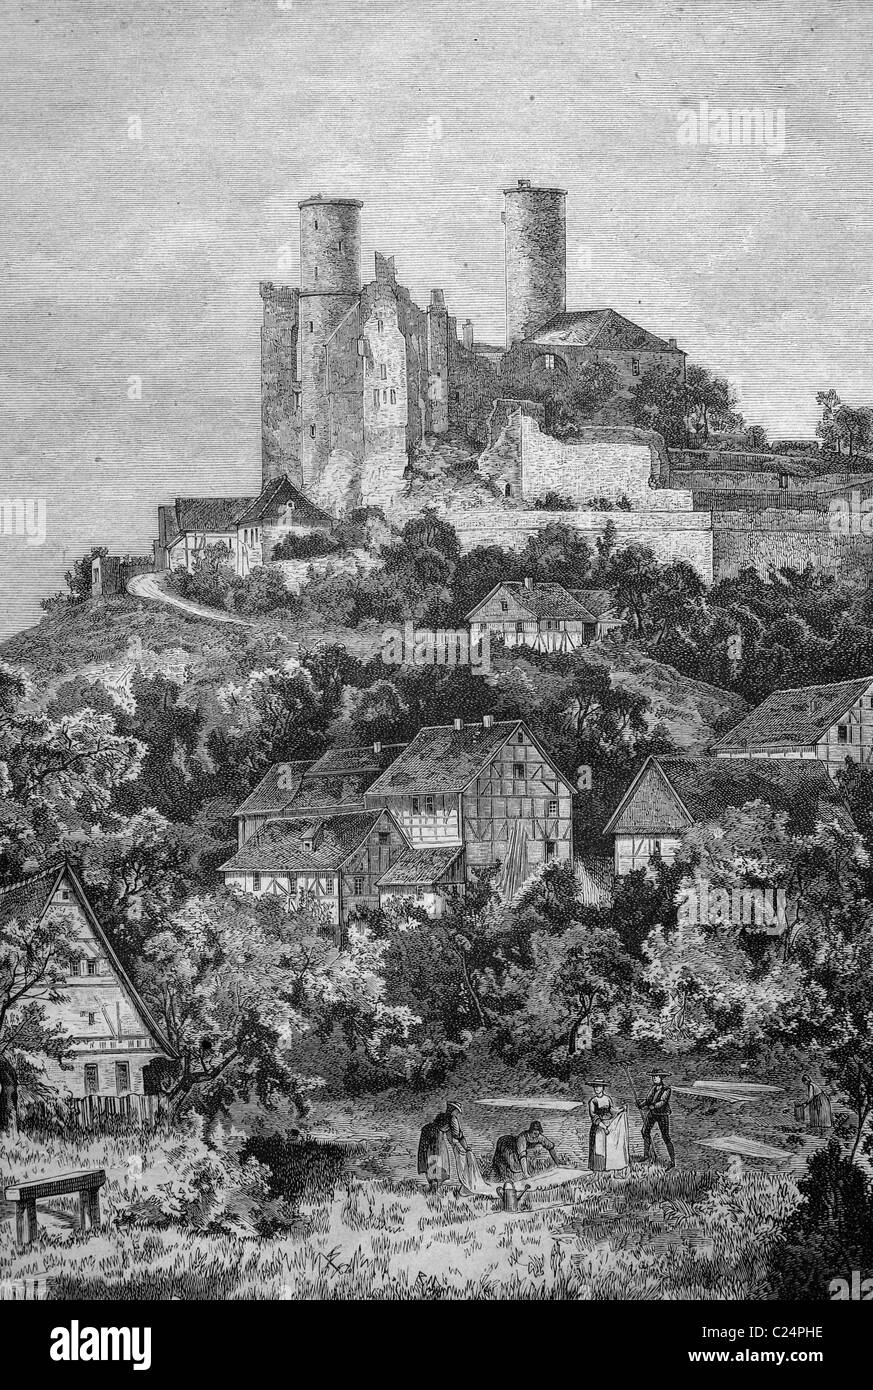 Ruine du château de Hanstein, Bornhagen, district Nordhausen, Thuringe, Allemagne, illustration historique, 1877 Banque D'Images